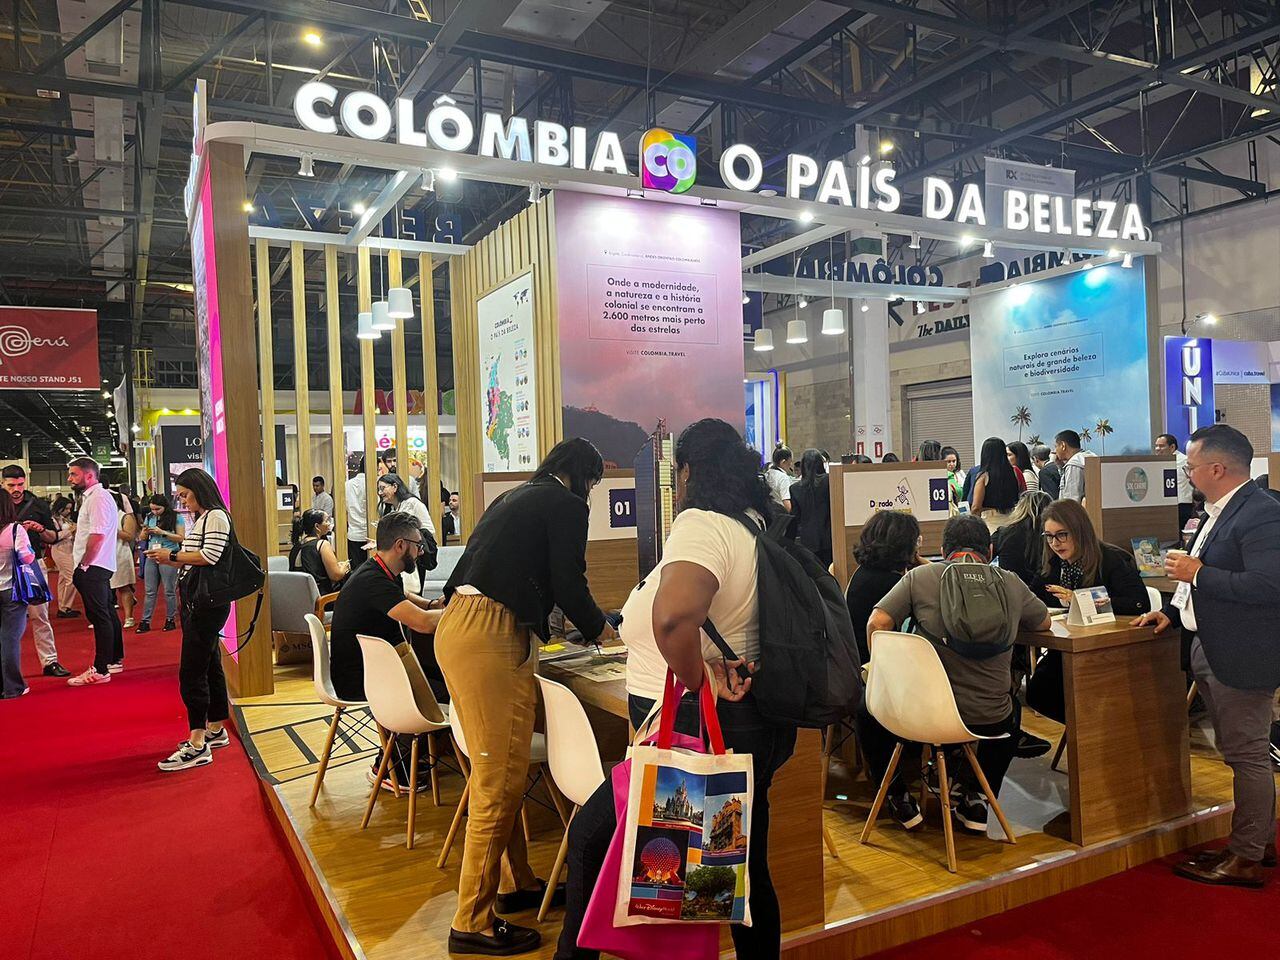 “El Festival Petronio Álvarez y la ciudad de Cali han atraído a visitantes brasileños en busca de conexiones con la diáspora africana, así como la ciudad de Cartagena y su palpitante cultura negra”.